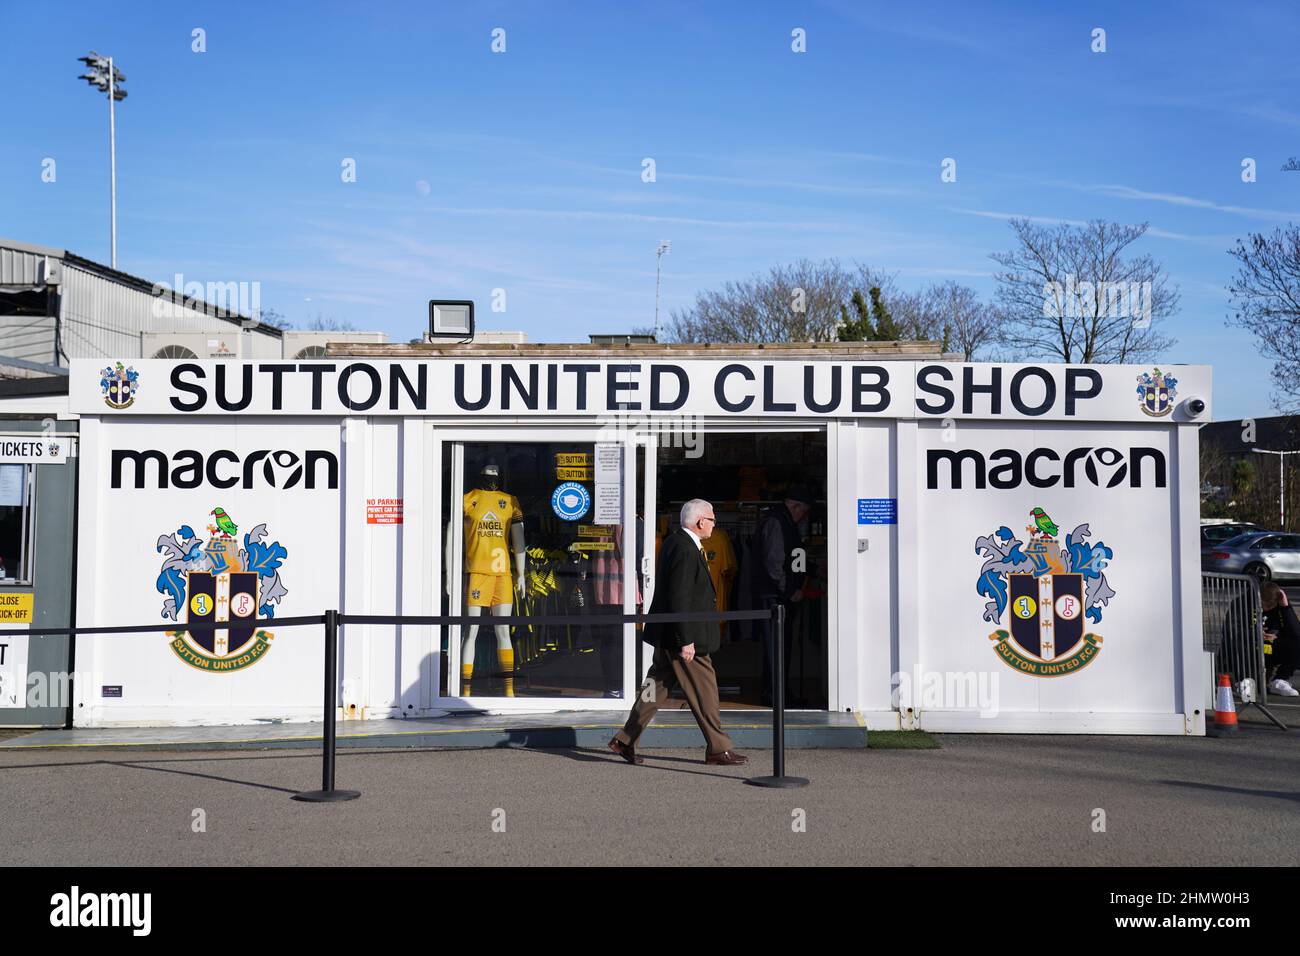 Ein Mann geht am Sutton United Club Shop vorbei, bevor es zum zweiten Spiel der Sky Bet League im VBS Community Stadium, London, geht. Bilddatum: Samstag, 12. Februar 2022. Stockfoto